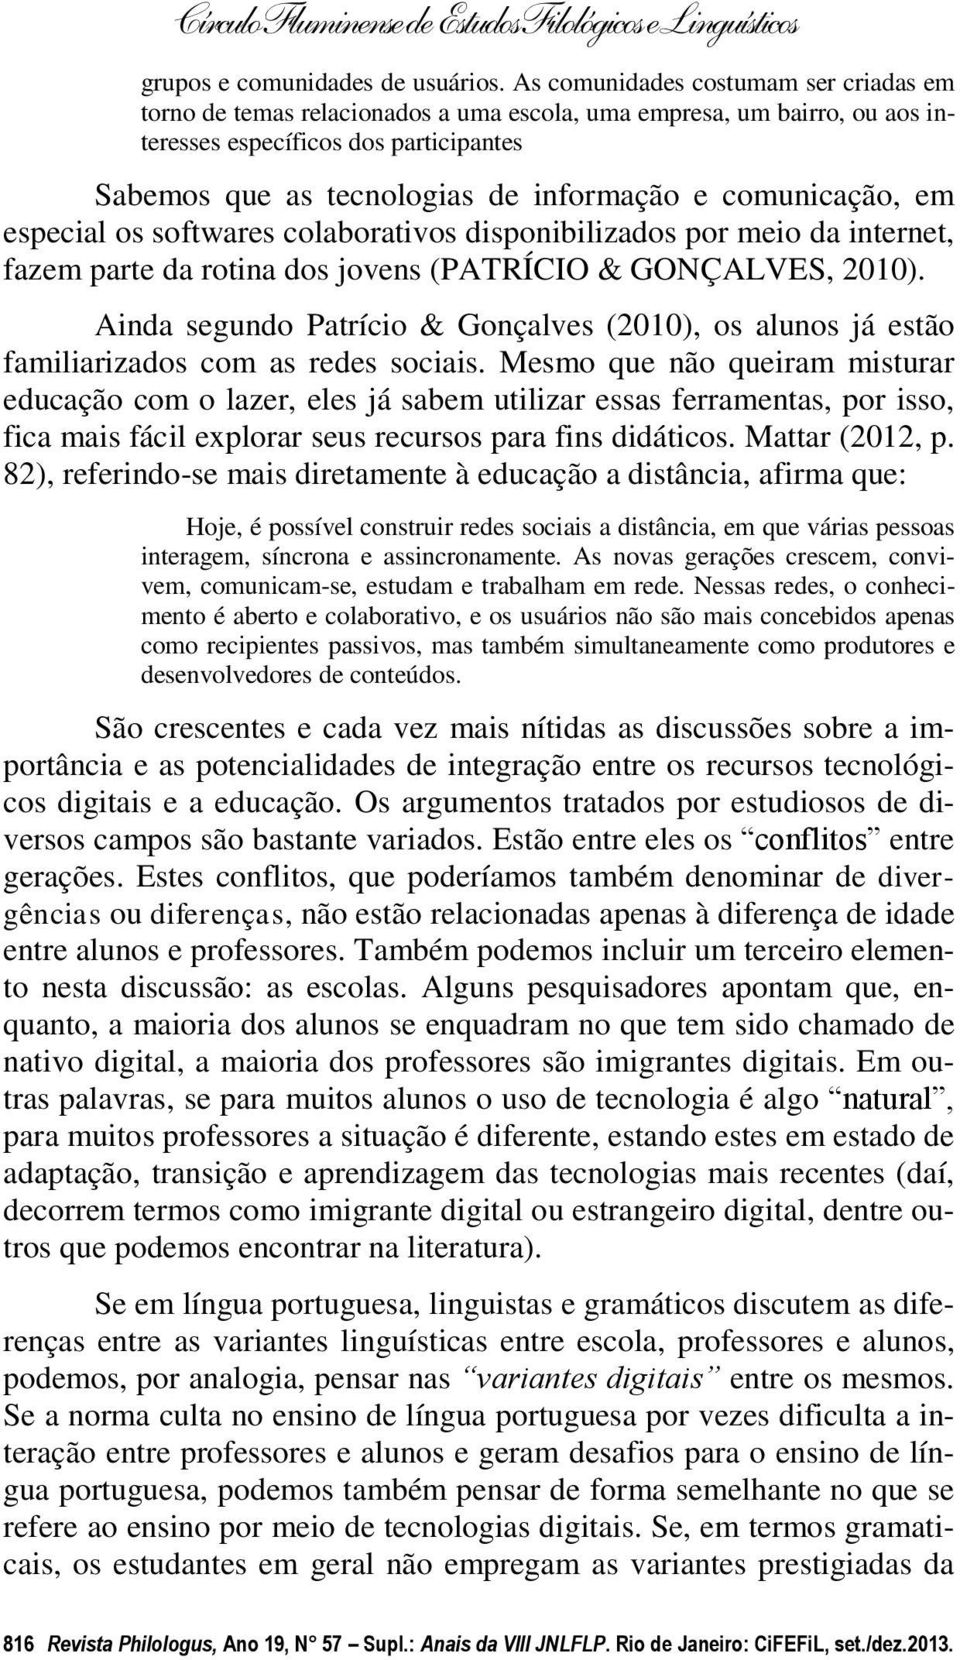 comunicação, em especial os softwares colaborativos disponibilizados por meio da internet, fazem parte da rotina dos jovens (PATRÍCIO & GONÇALVES, 2010).